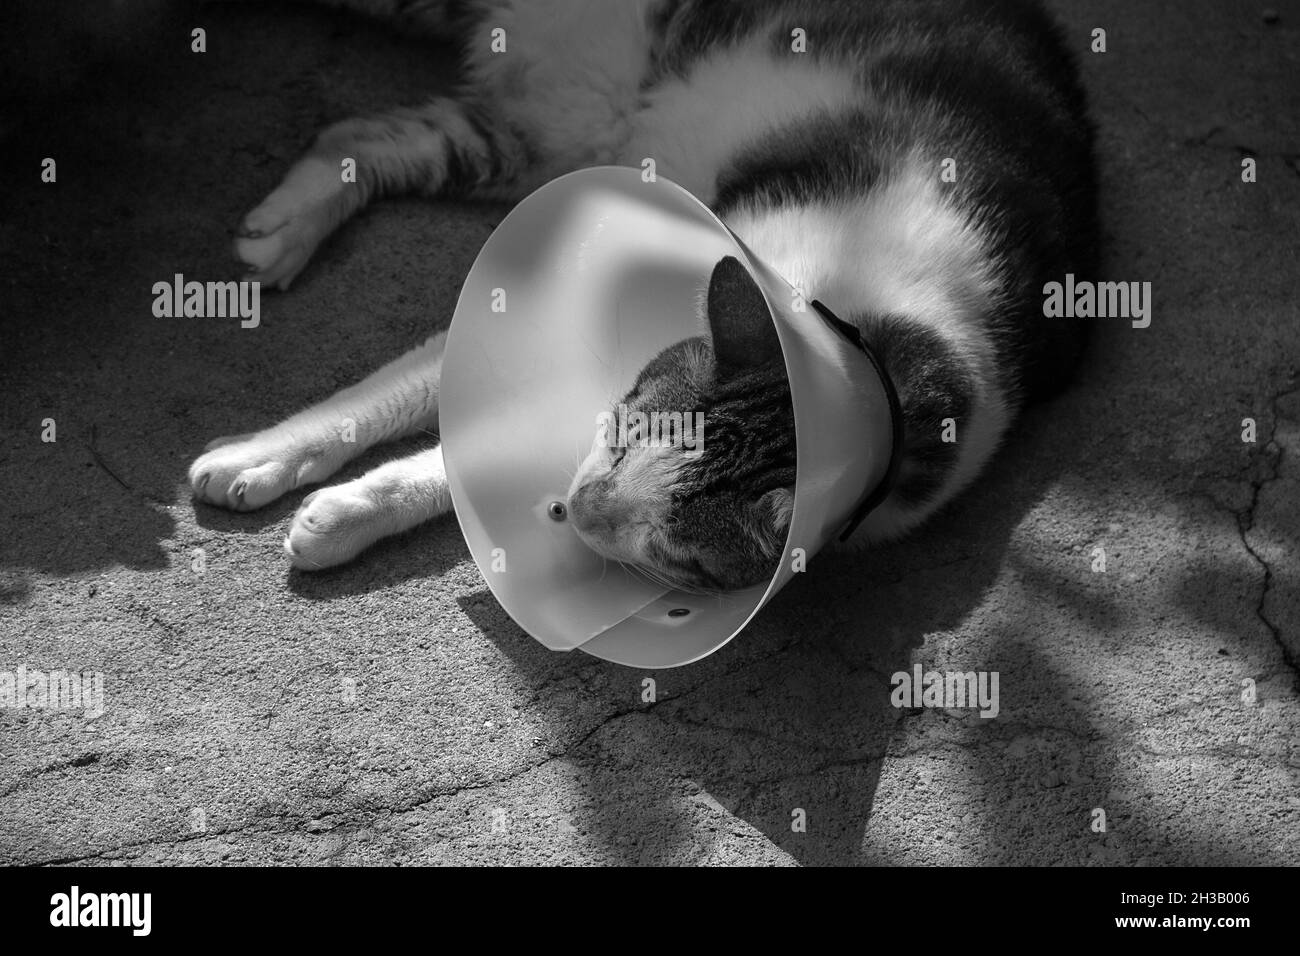 Un gatto tabby, sdraiato a terra, con un cono protettivo. Immagine in bianco e nero. Foto Stock